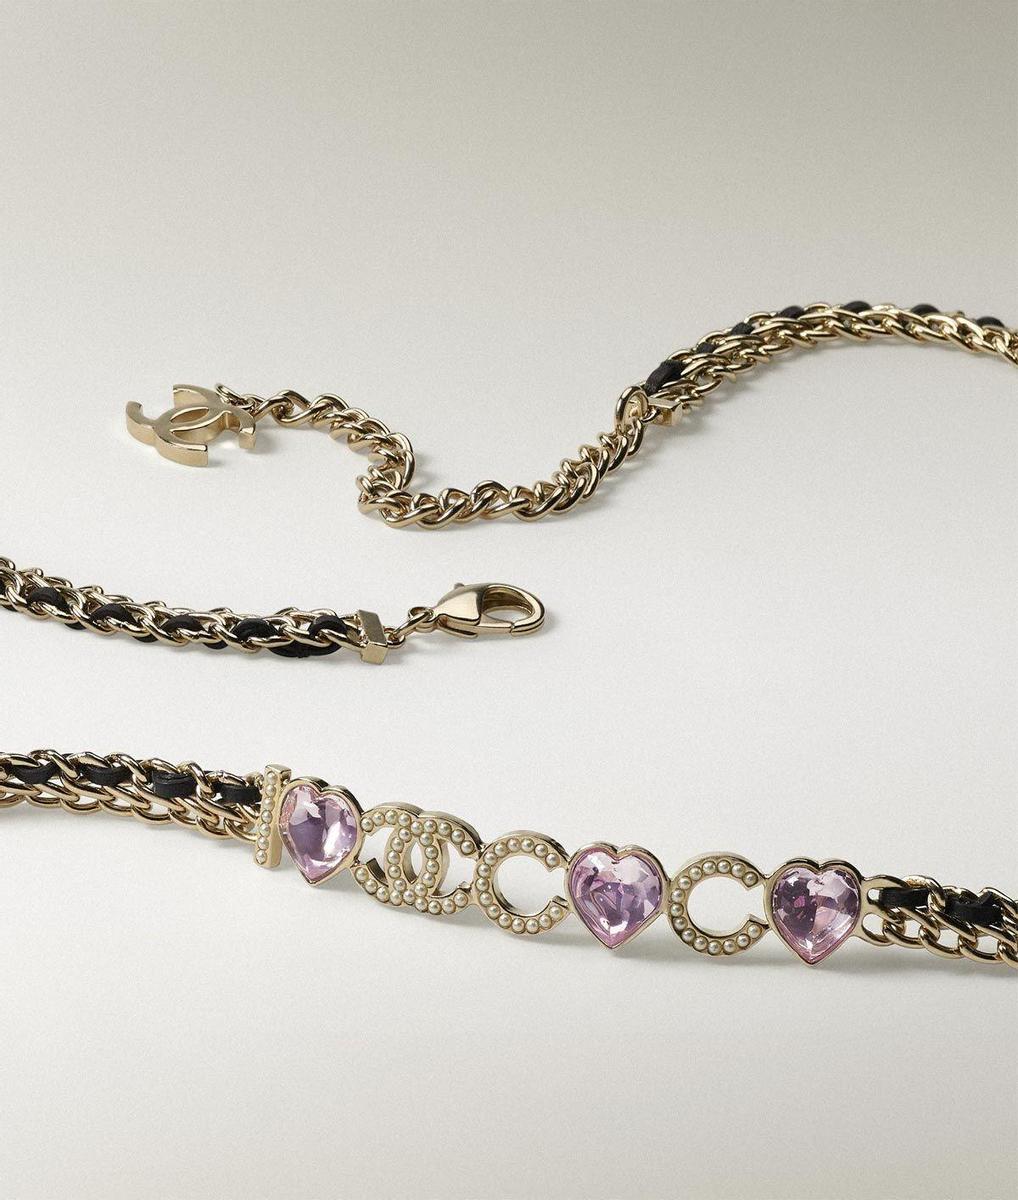 Cinturón cadena de metal, piel de cordero, strass y perlas de vidrio, de Chanel